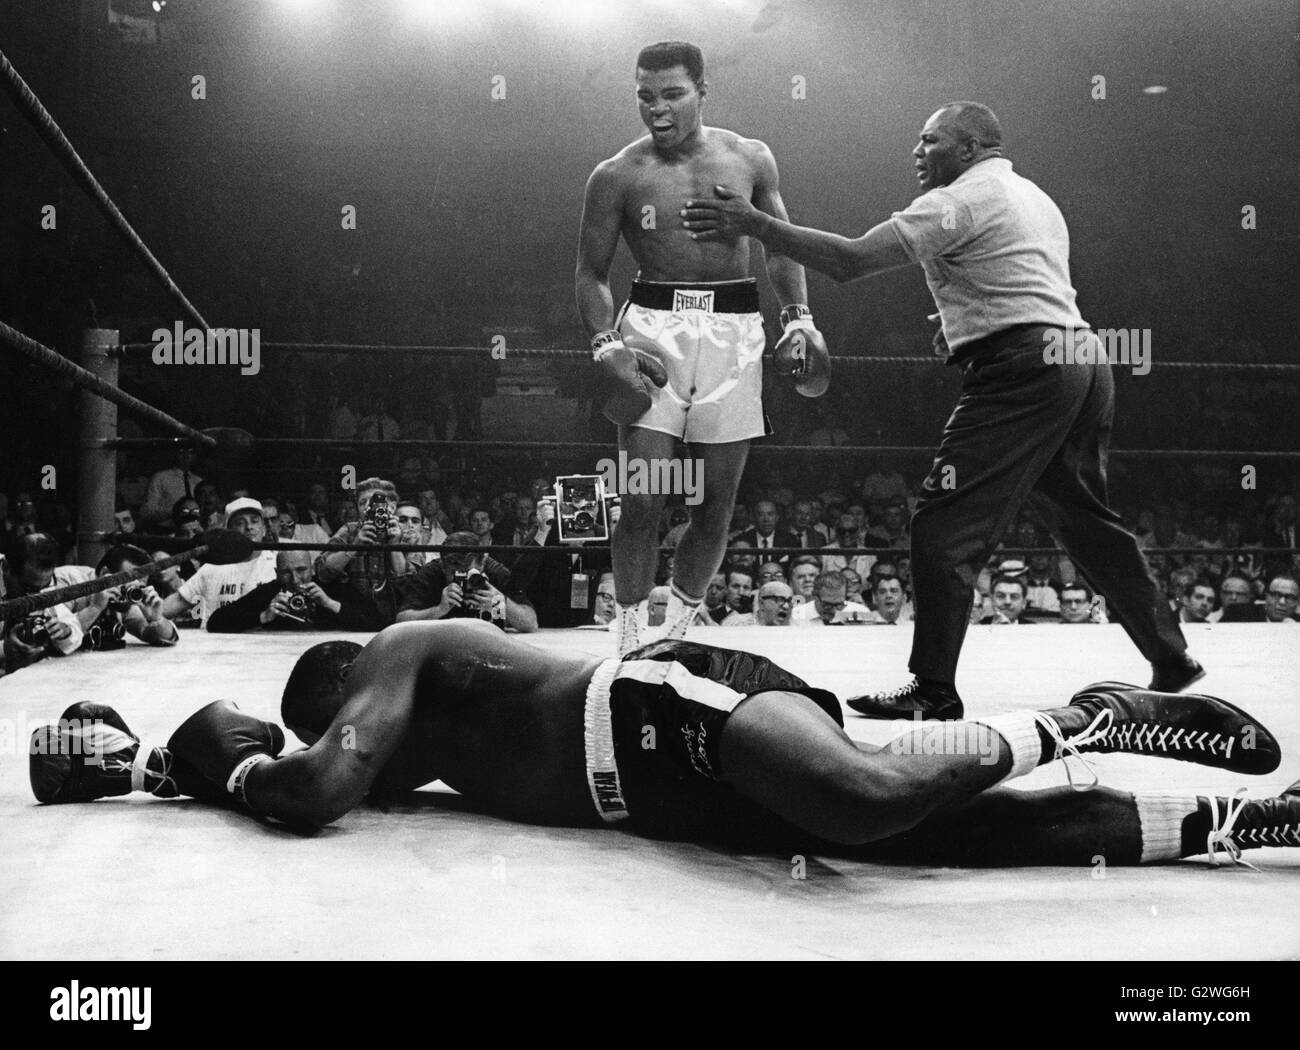 FILE - un file immagine datata 25 maggio 1965 mostra trionfante noi boxer Muhammad Ali (Cassio argilla) (C) essendo fermato da arbitro Walcott come egli guarda al suo avversario Charles 'Sonny' Liston che giace a terra durante il loro bout in Lewiston, Maine, Stati Uniti d'America. Nato Cassio argilla, boxe leggenda Muhammad Ali, soprannominato 'il più grande, ' morì il 03 giugno 2016 a Phoenix, Arizona, Stati Uniti d'America, all'età di 74, una famiglia portavoce ha detto. Foto: dpa Foto Stock